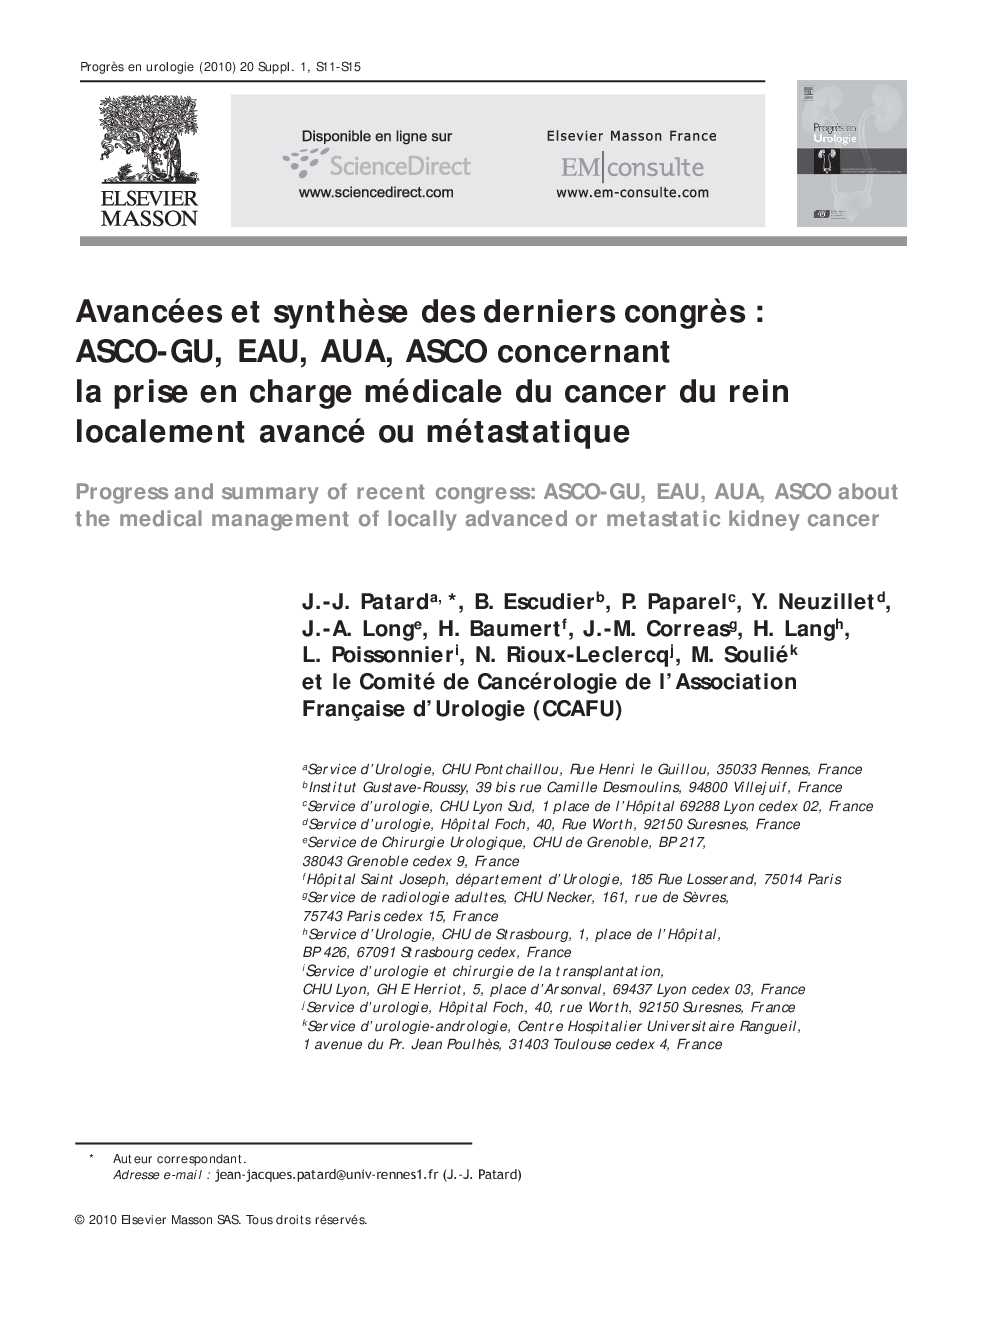 Avancées et synthèse des derniers congrès : ASCO-GU, EAU, AUA, ASCO concernant la prise en charge médicale du cancer du rein localement avancé ou métastatique